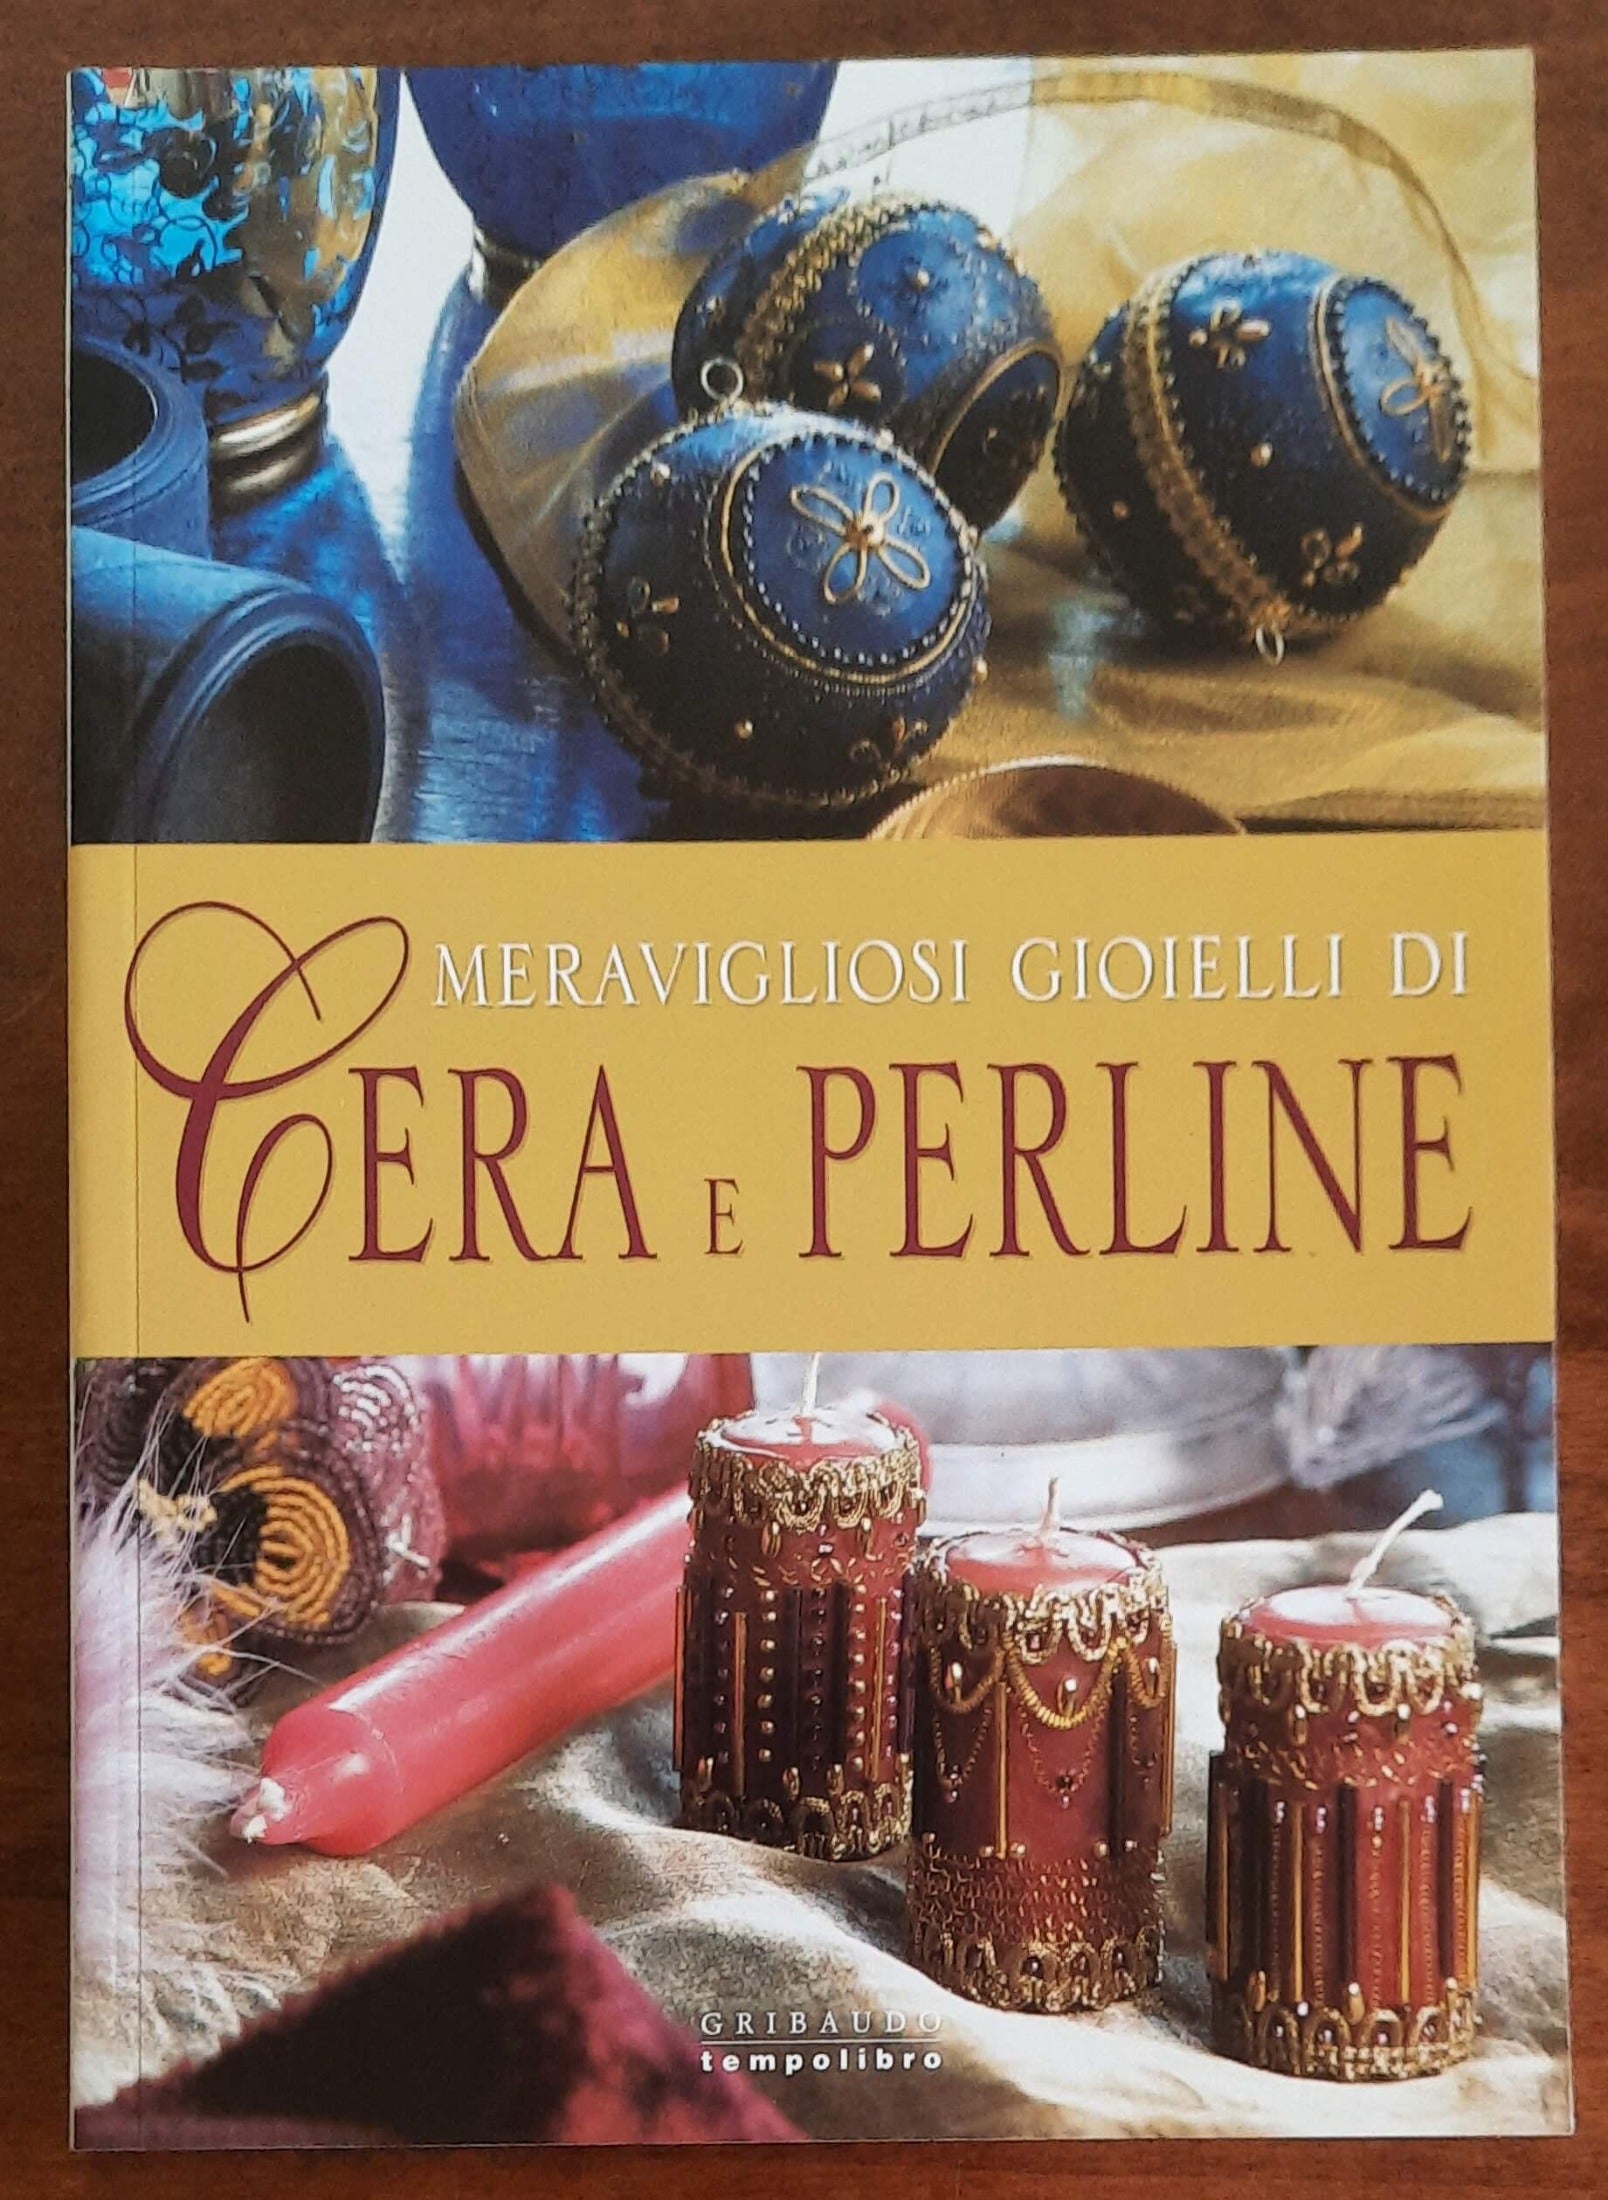 Meravigliosi gioielli di cera e perline - Gribaudo